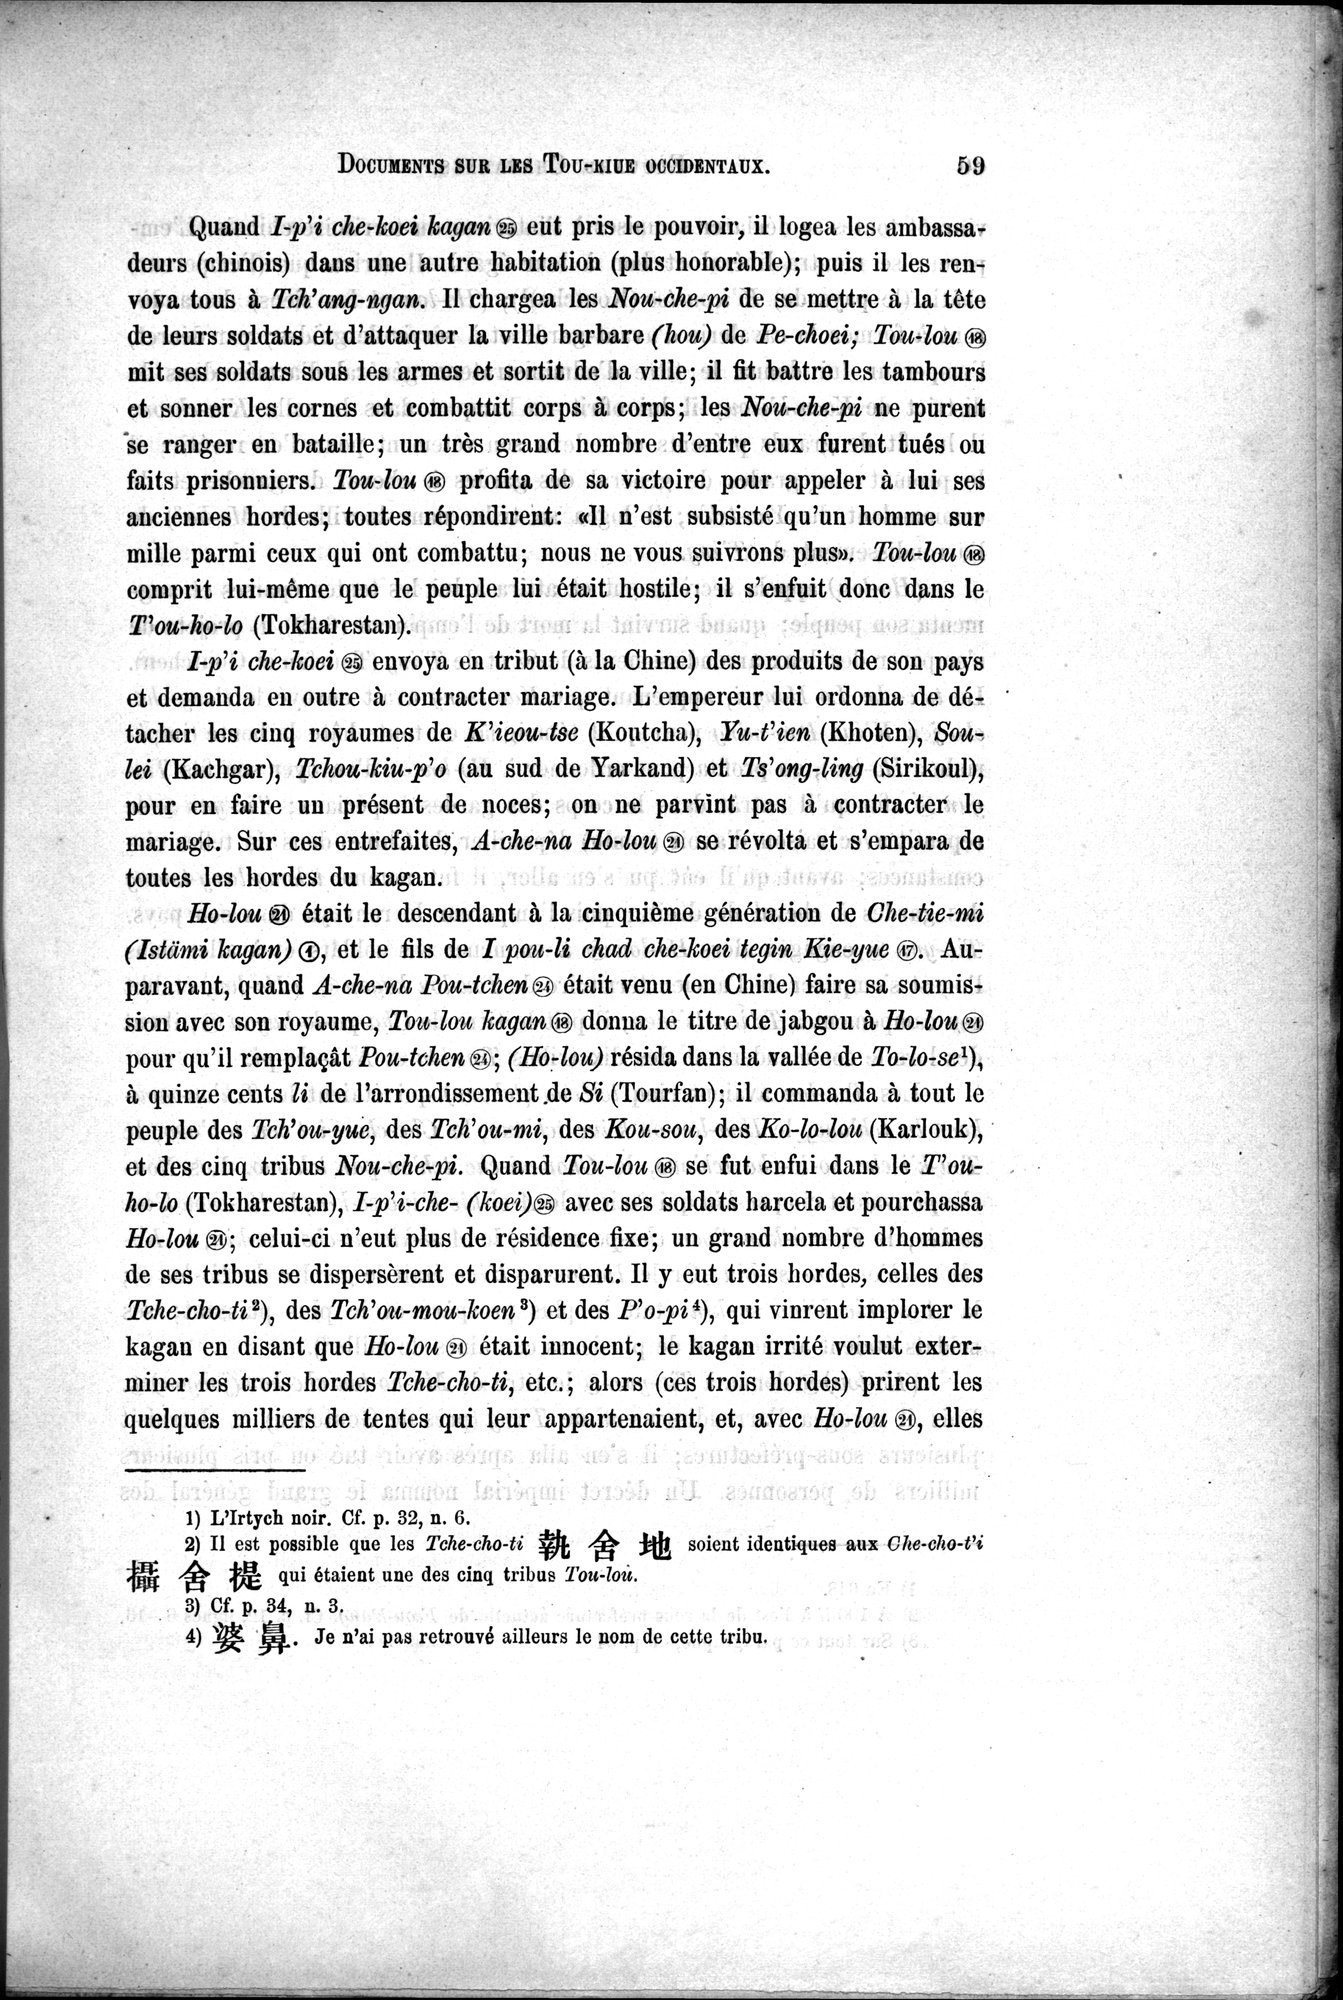 Documents sur les Tou-kiue (Turcs) occidentaux : vol.1 / Page 69 (Grayscale High Resolution Image)